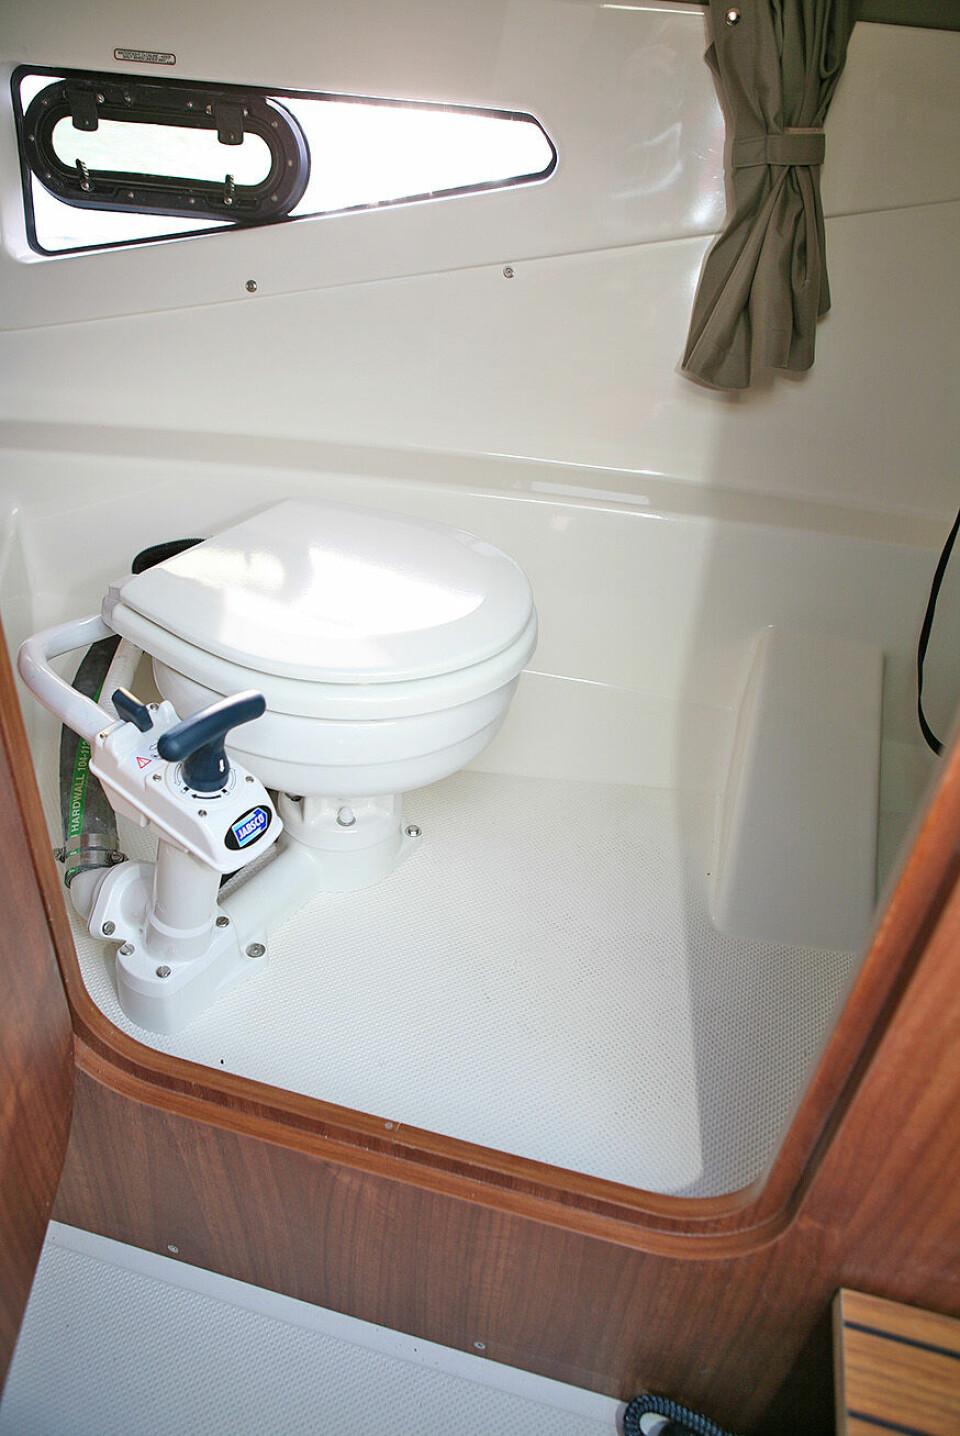 KOMPLETT: Det er ikke mange syv-meters daycruisere som har et så romslig og komplett, separat toalettrom. Her er det sjøvannstoalett, håndvask og ventil som kan åpnes for ventilasjon.